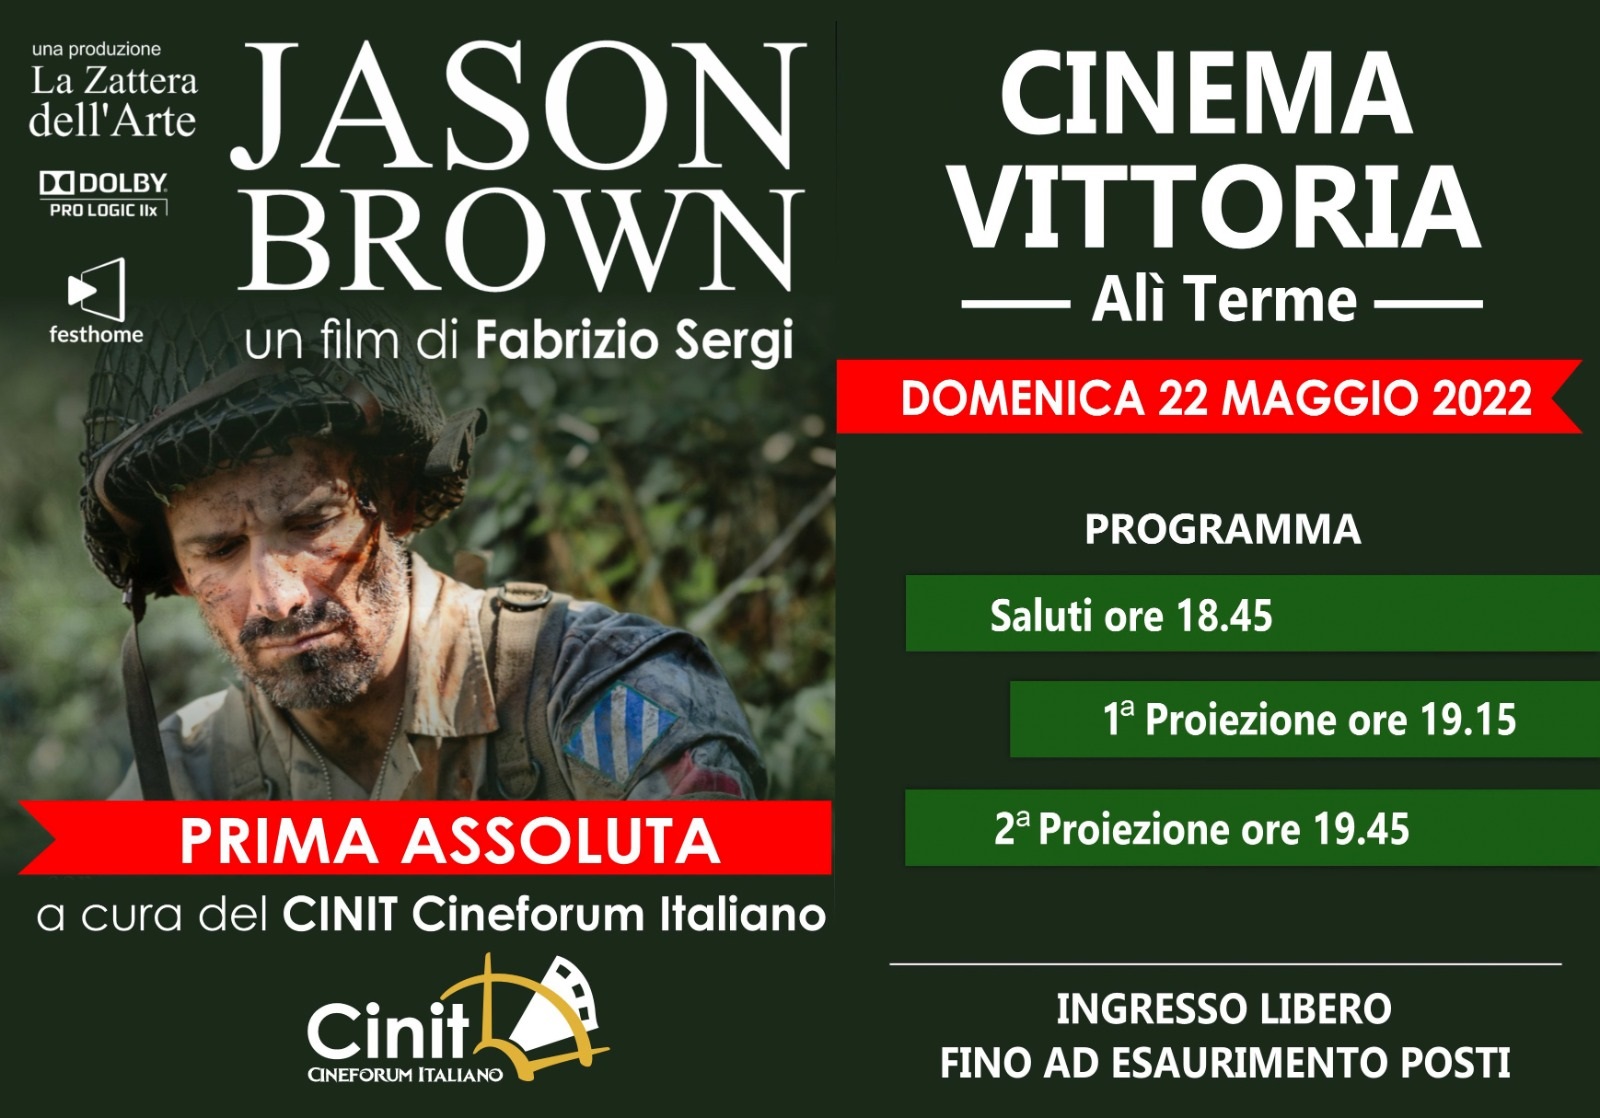 Domenica 22 maggio al CineVittoria di Alì Terme prima del corto “Jason Brown” di Fabrizio Sergi